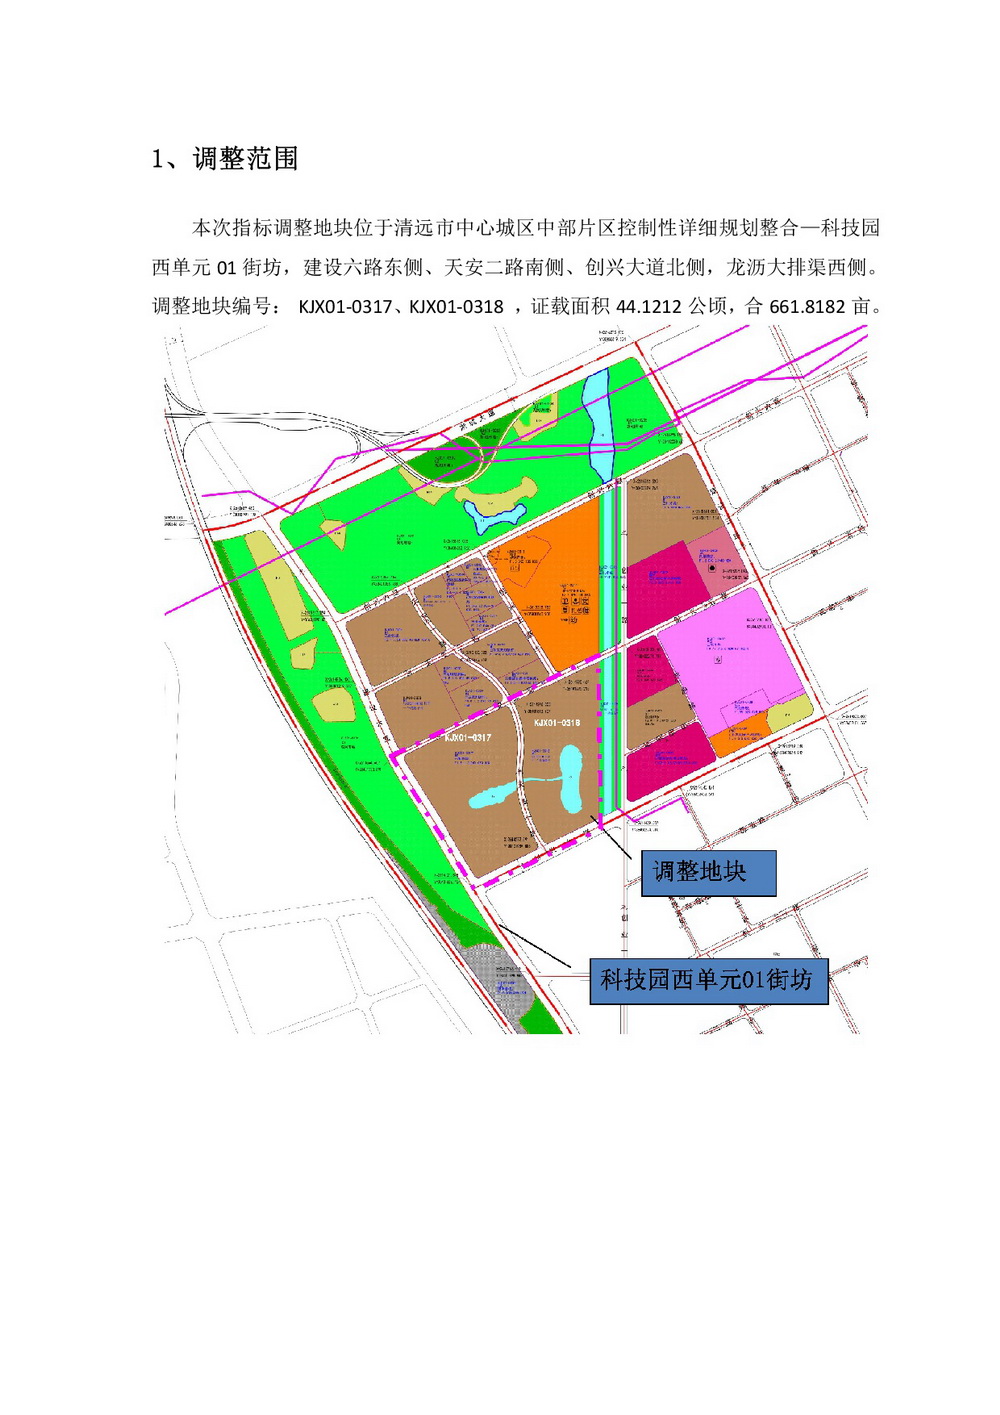 网站公示《科技园西单元01街坊控制性详细规划局部地块调整》批前公示-002.jpg